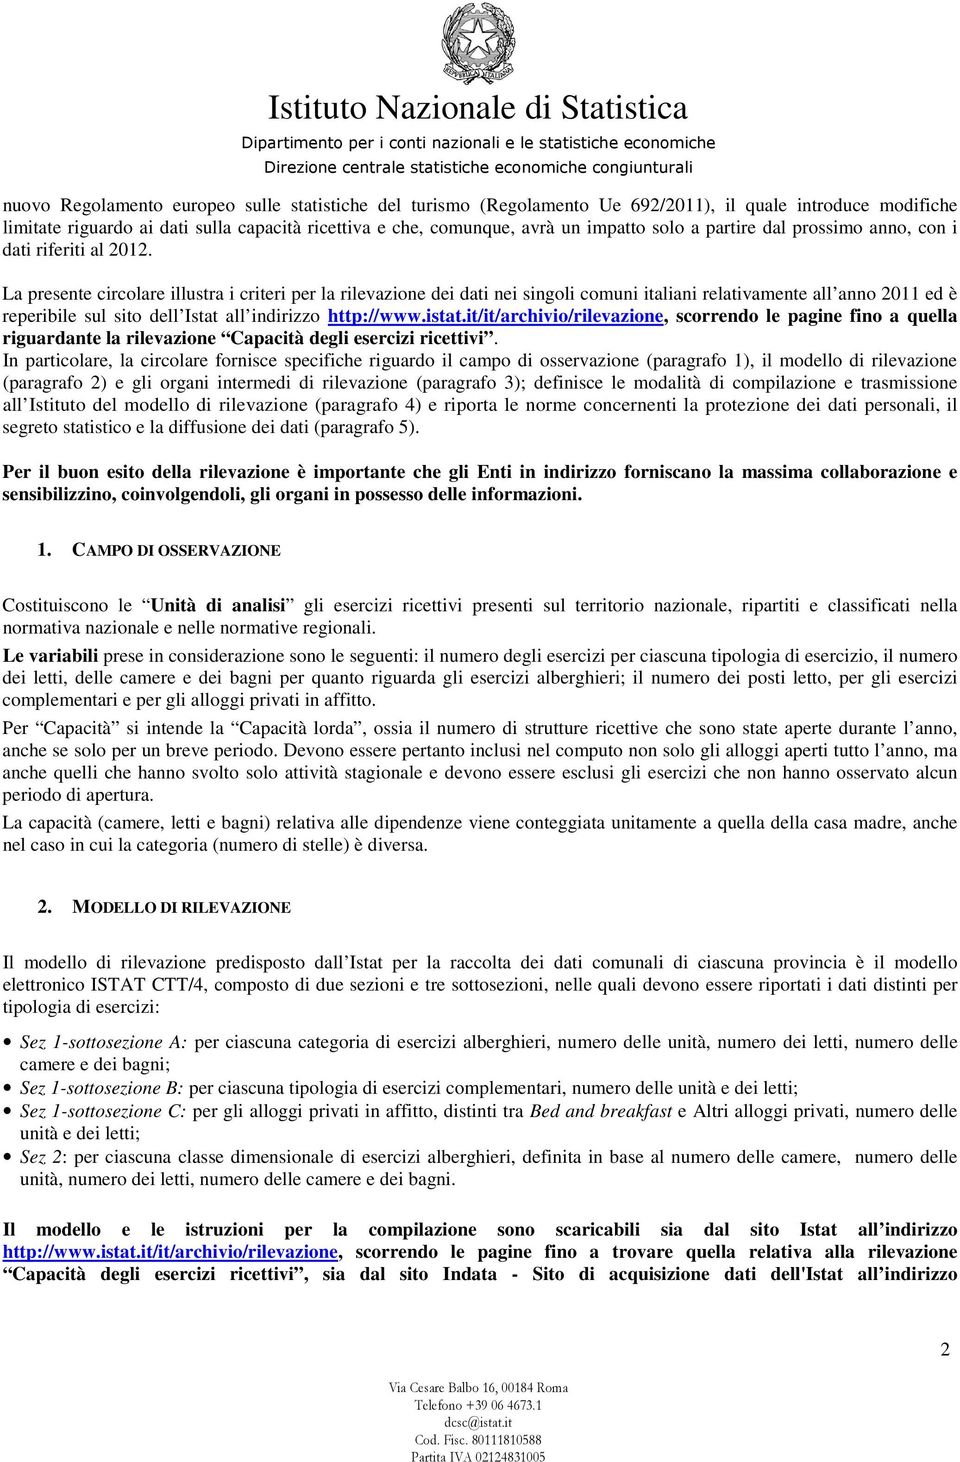 La presente circolare illustra i criteri per la rilevazione dei dati nei singoli comuni italiani relativamente all anno 2011 ed è reperibile sul sito dell Istat all indirizzo http://www.istat.